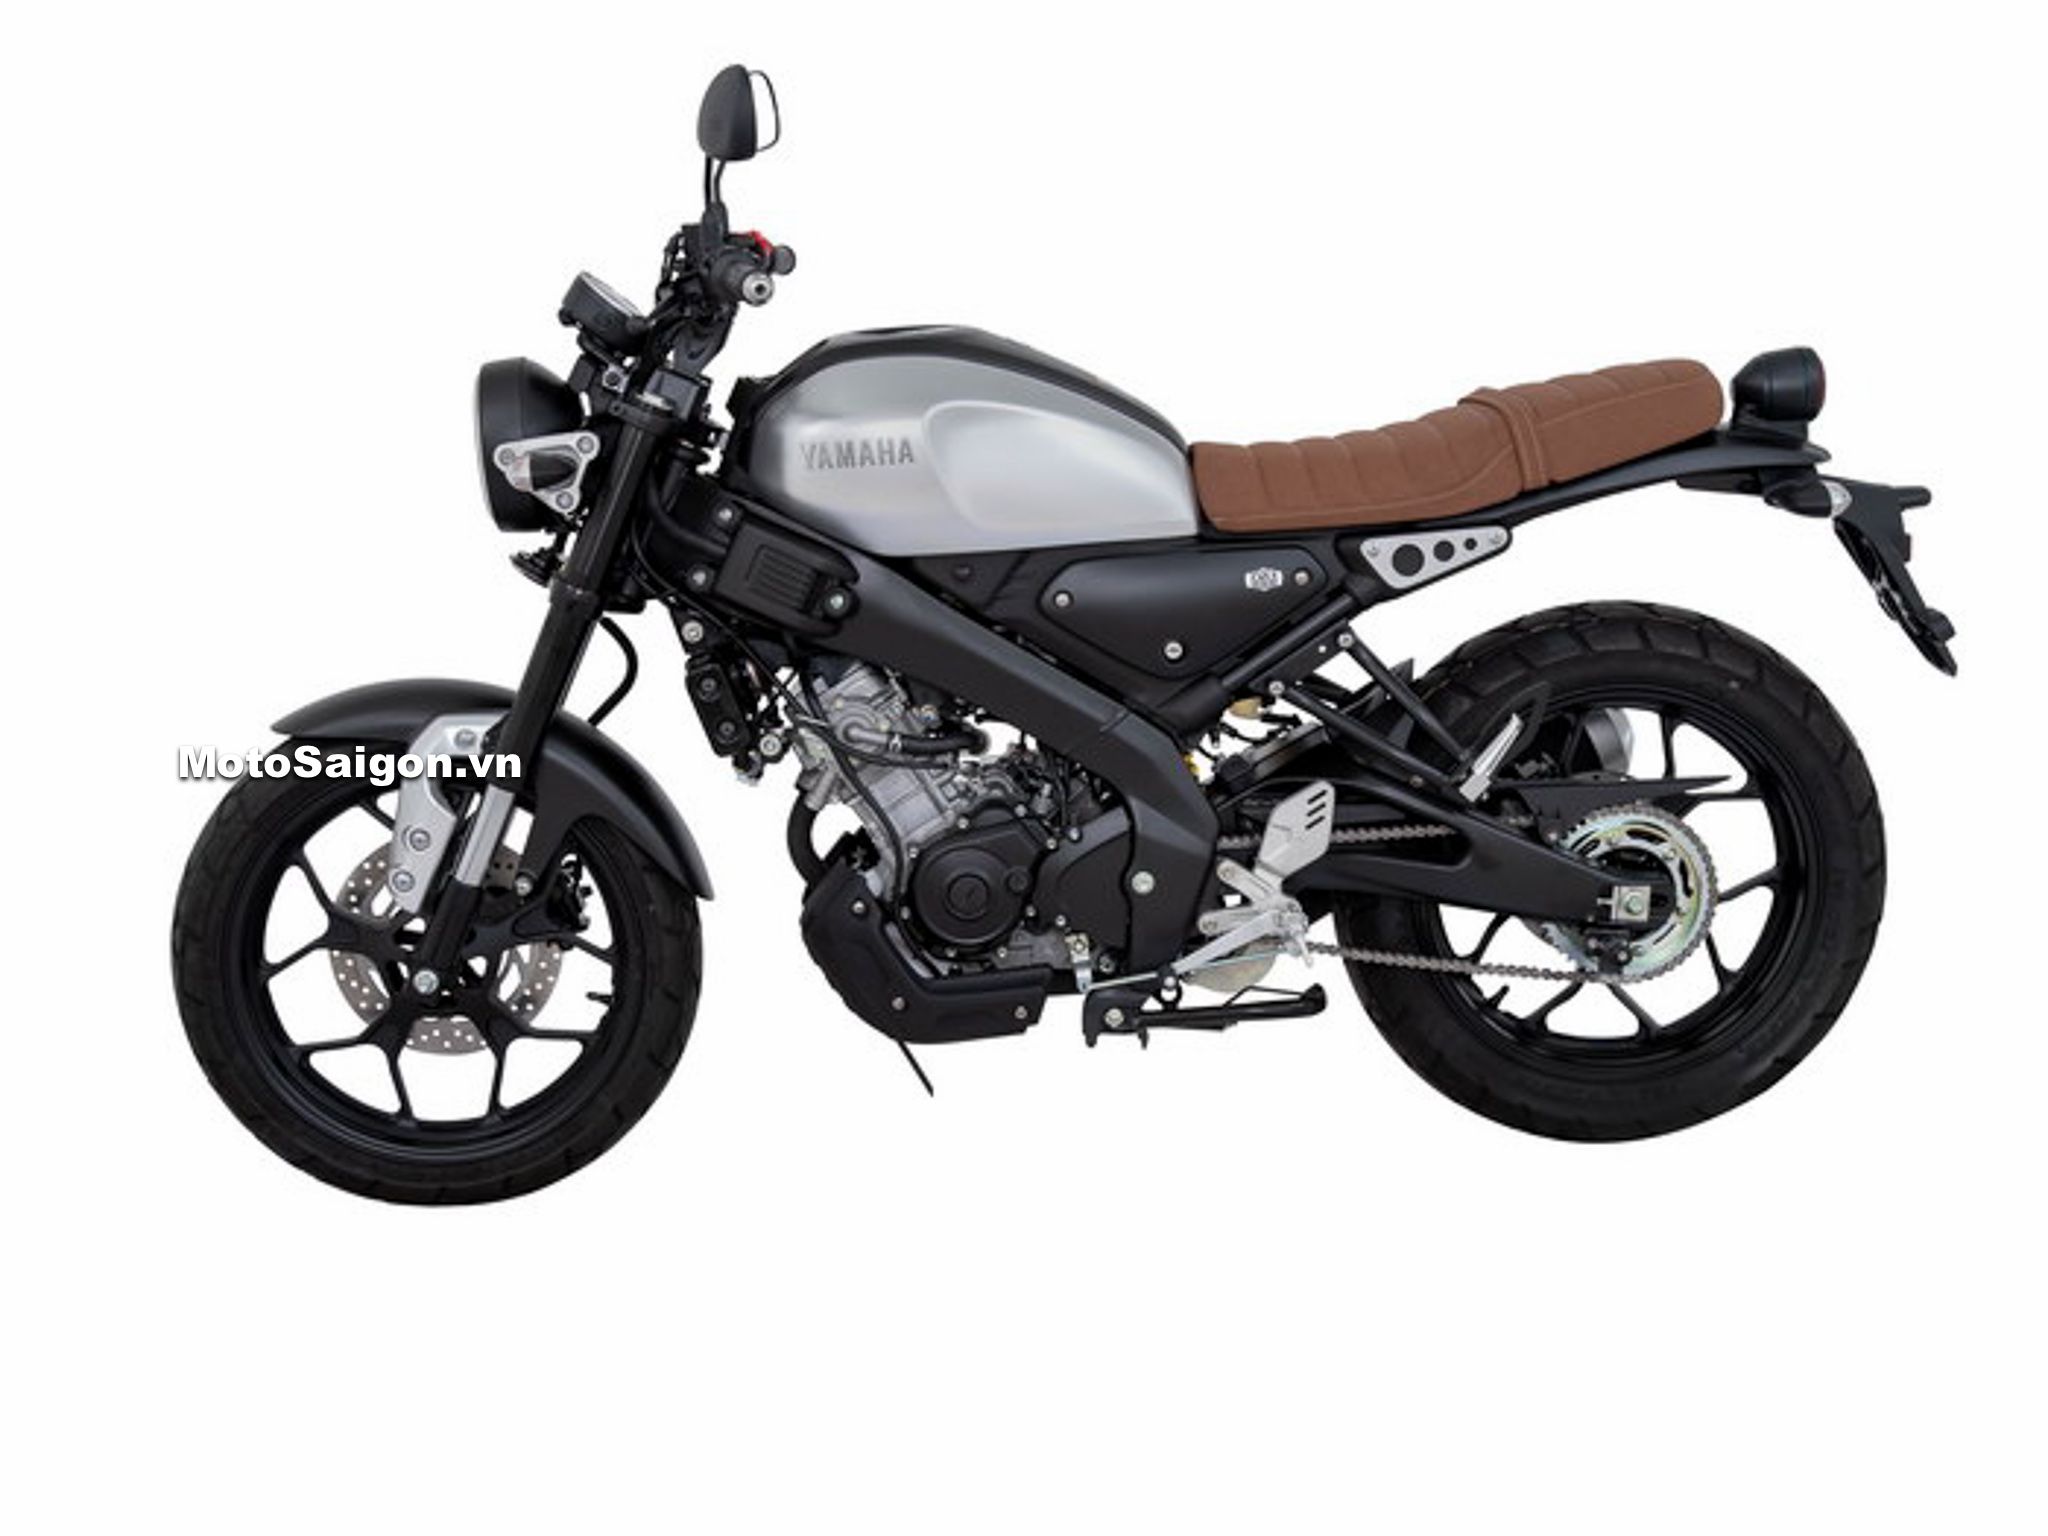 Yamaha XSR155 độ đẹp chỉ 7 TRIỆU  Phượt Safety Sài Gòn  XSR 155 độ đẹp   YouTube